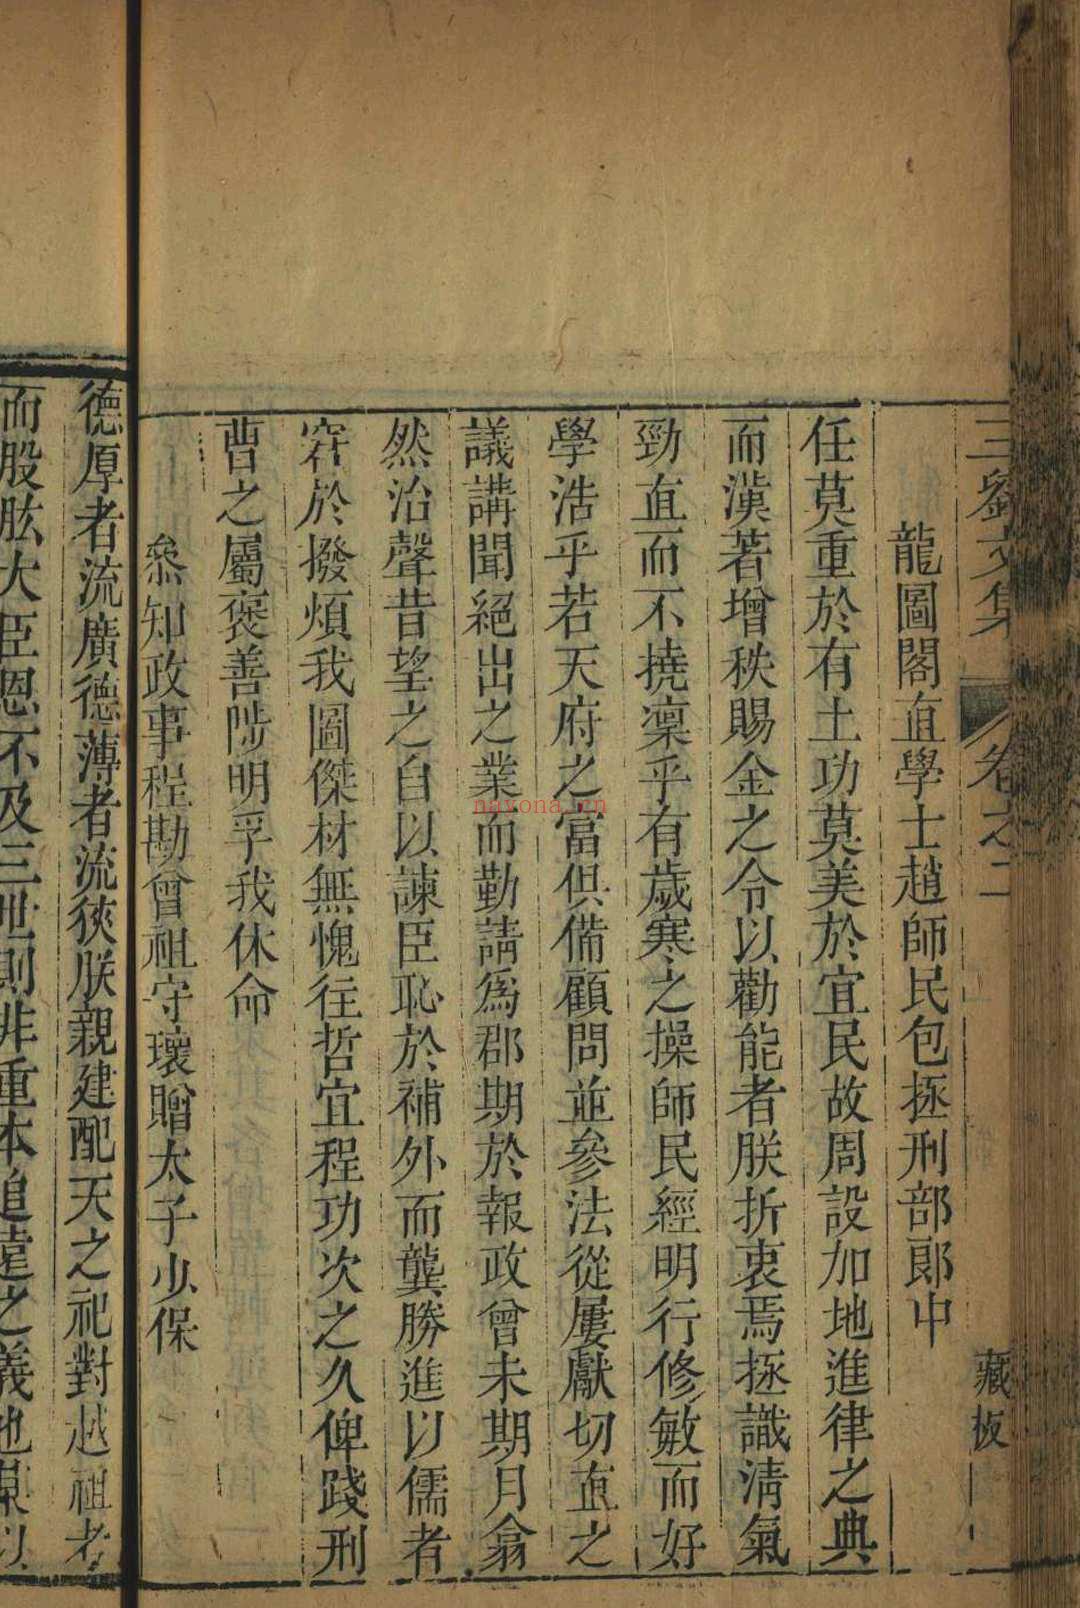 新喻三刘文集, 卷首, 六卷 [新喻], 刘启焜, 清乾隆15年[1750]